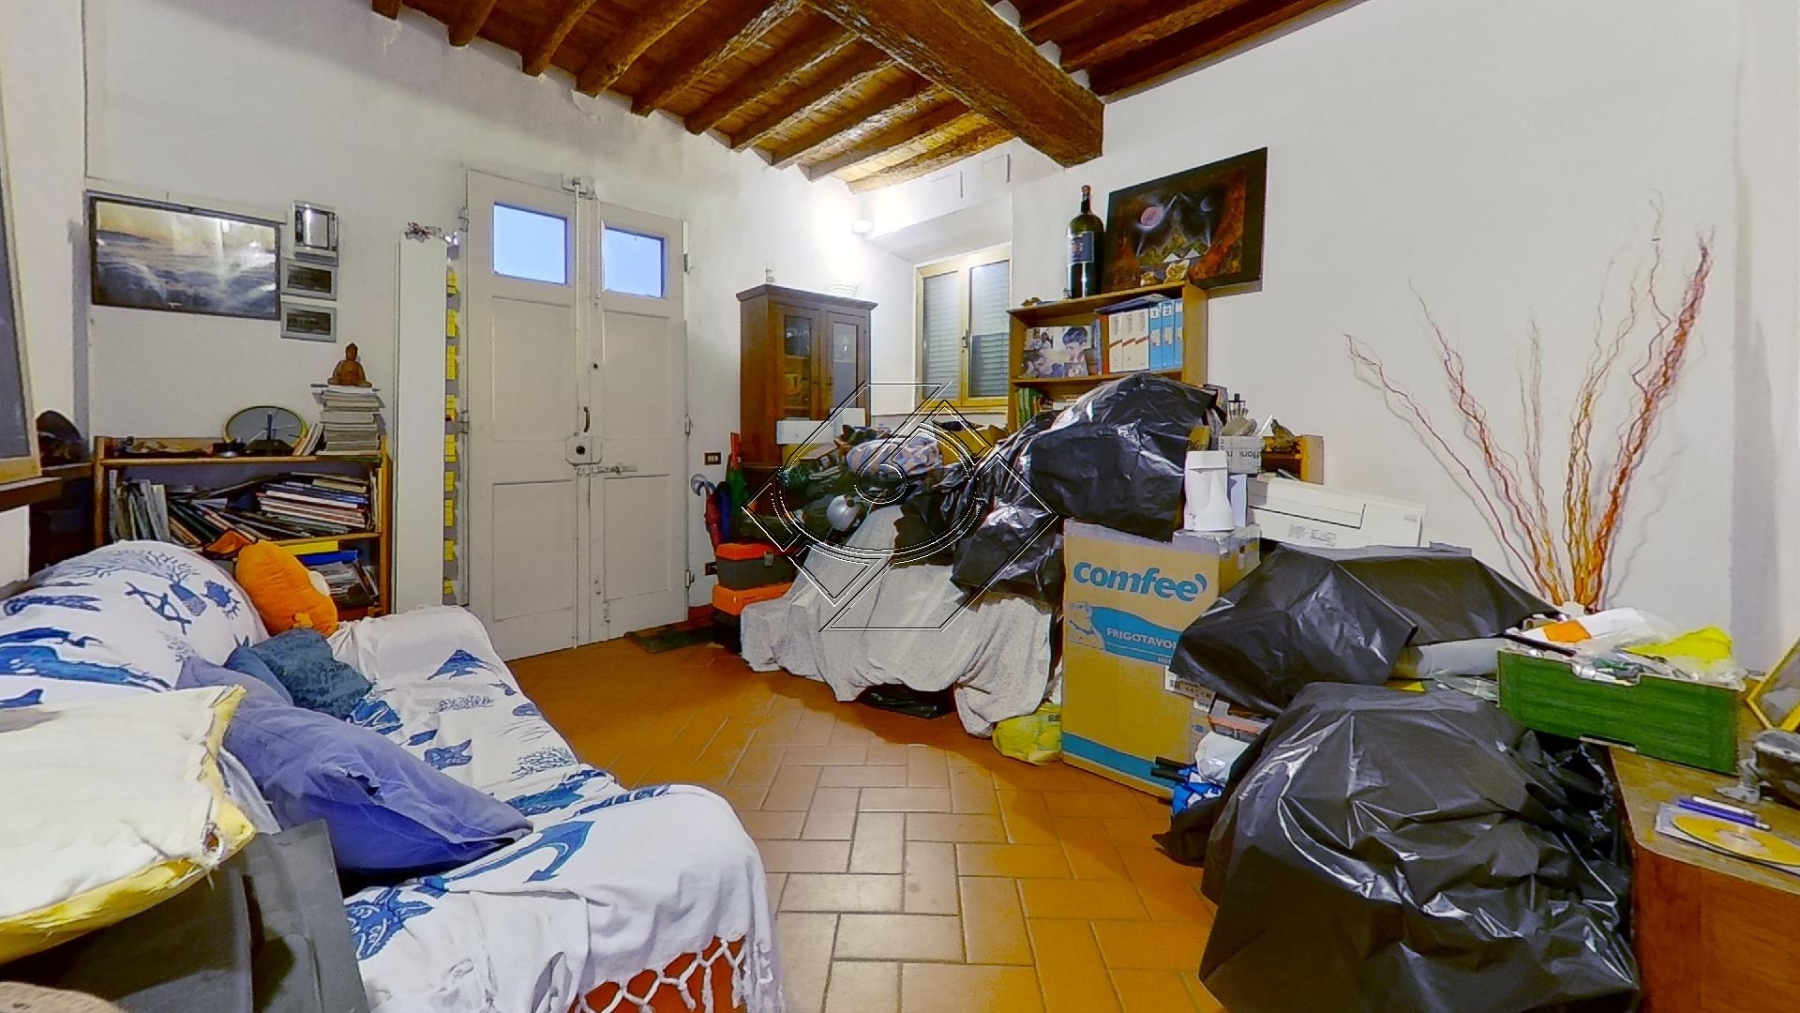 V536-Via-di-Peretola-Bedroom2